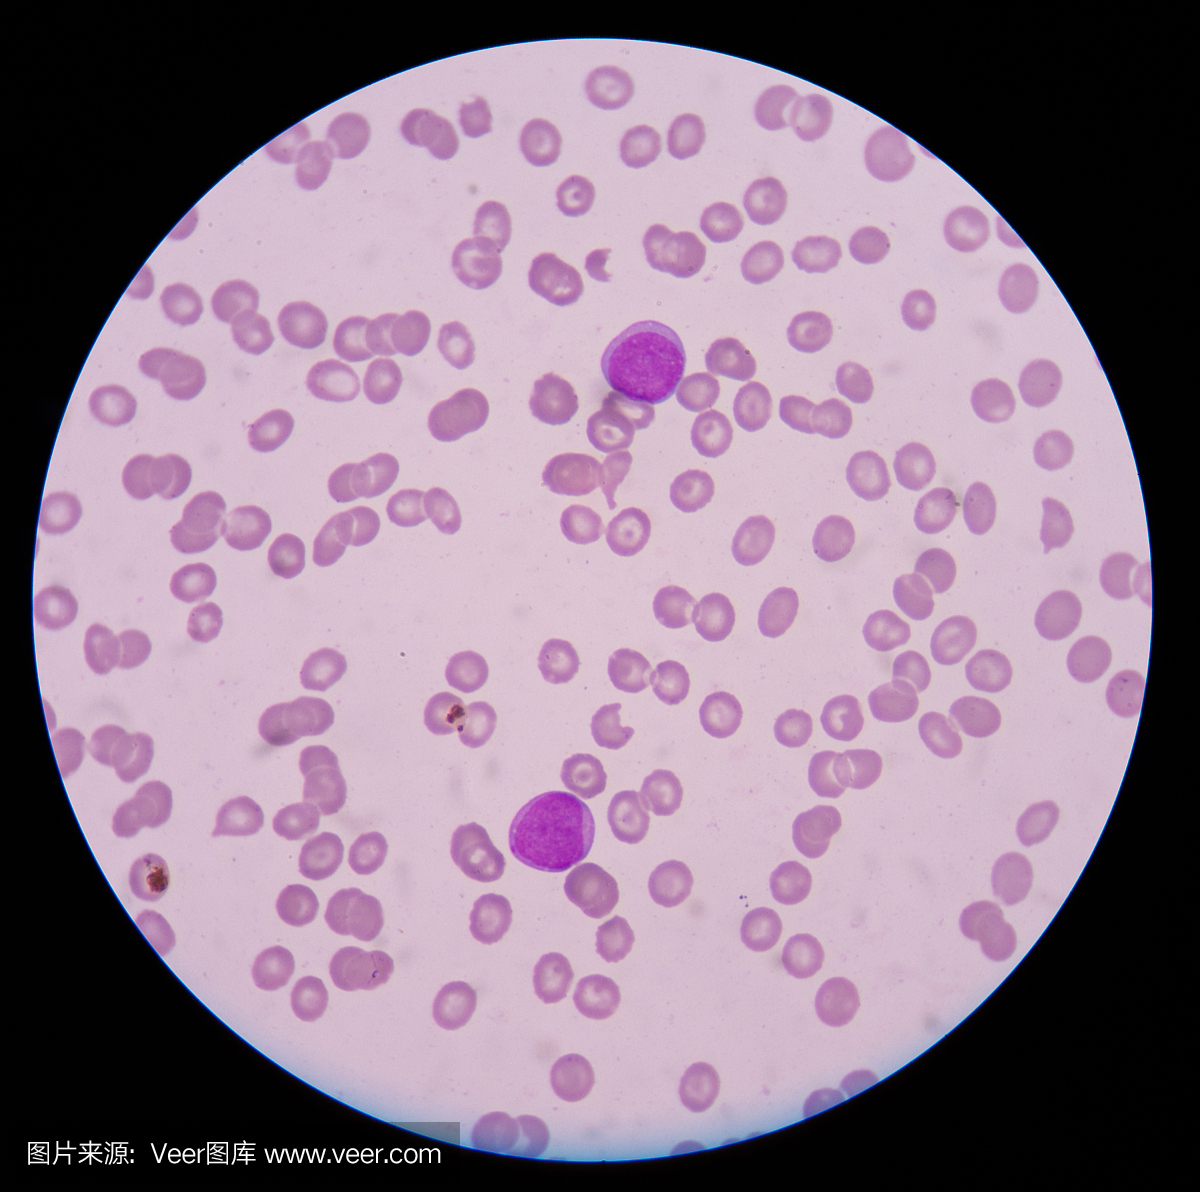 血液涂片显示急性成髓细胞白血病(AML)。